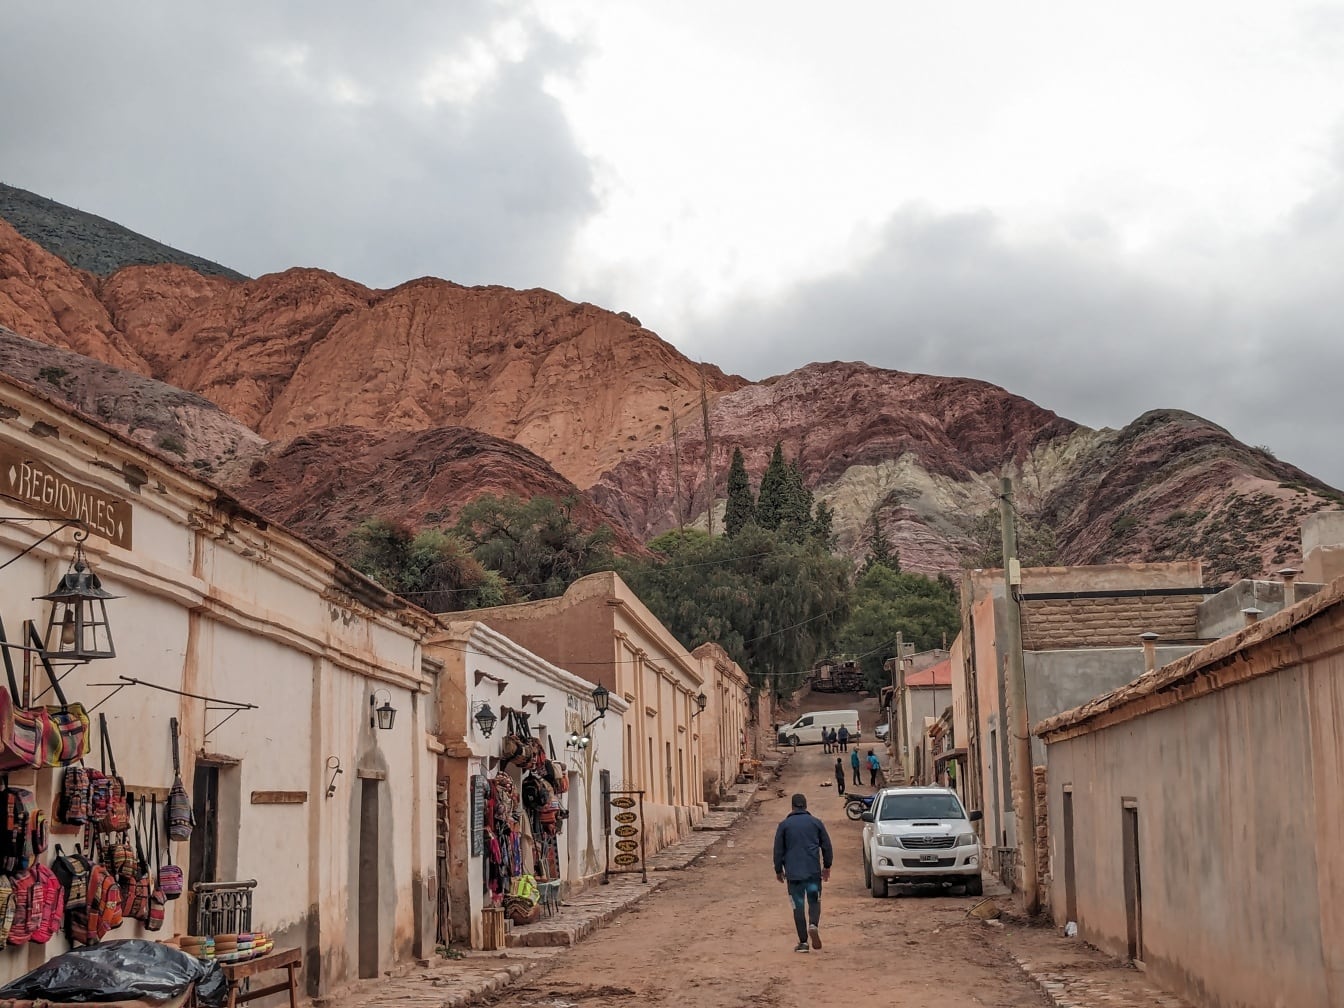 Abitante del villaggio che cammina lungo una strada sterrata nel villaggio rurale di Purmamarca in una valle delle Ande in Argentina